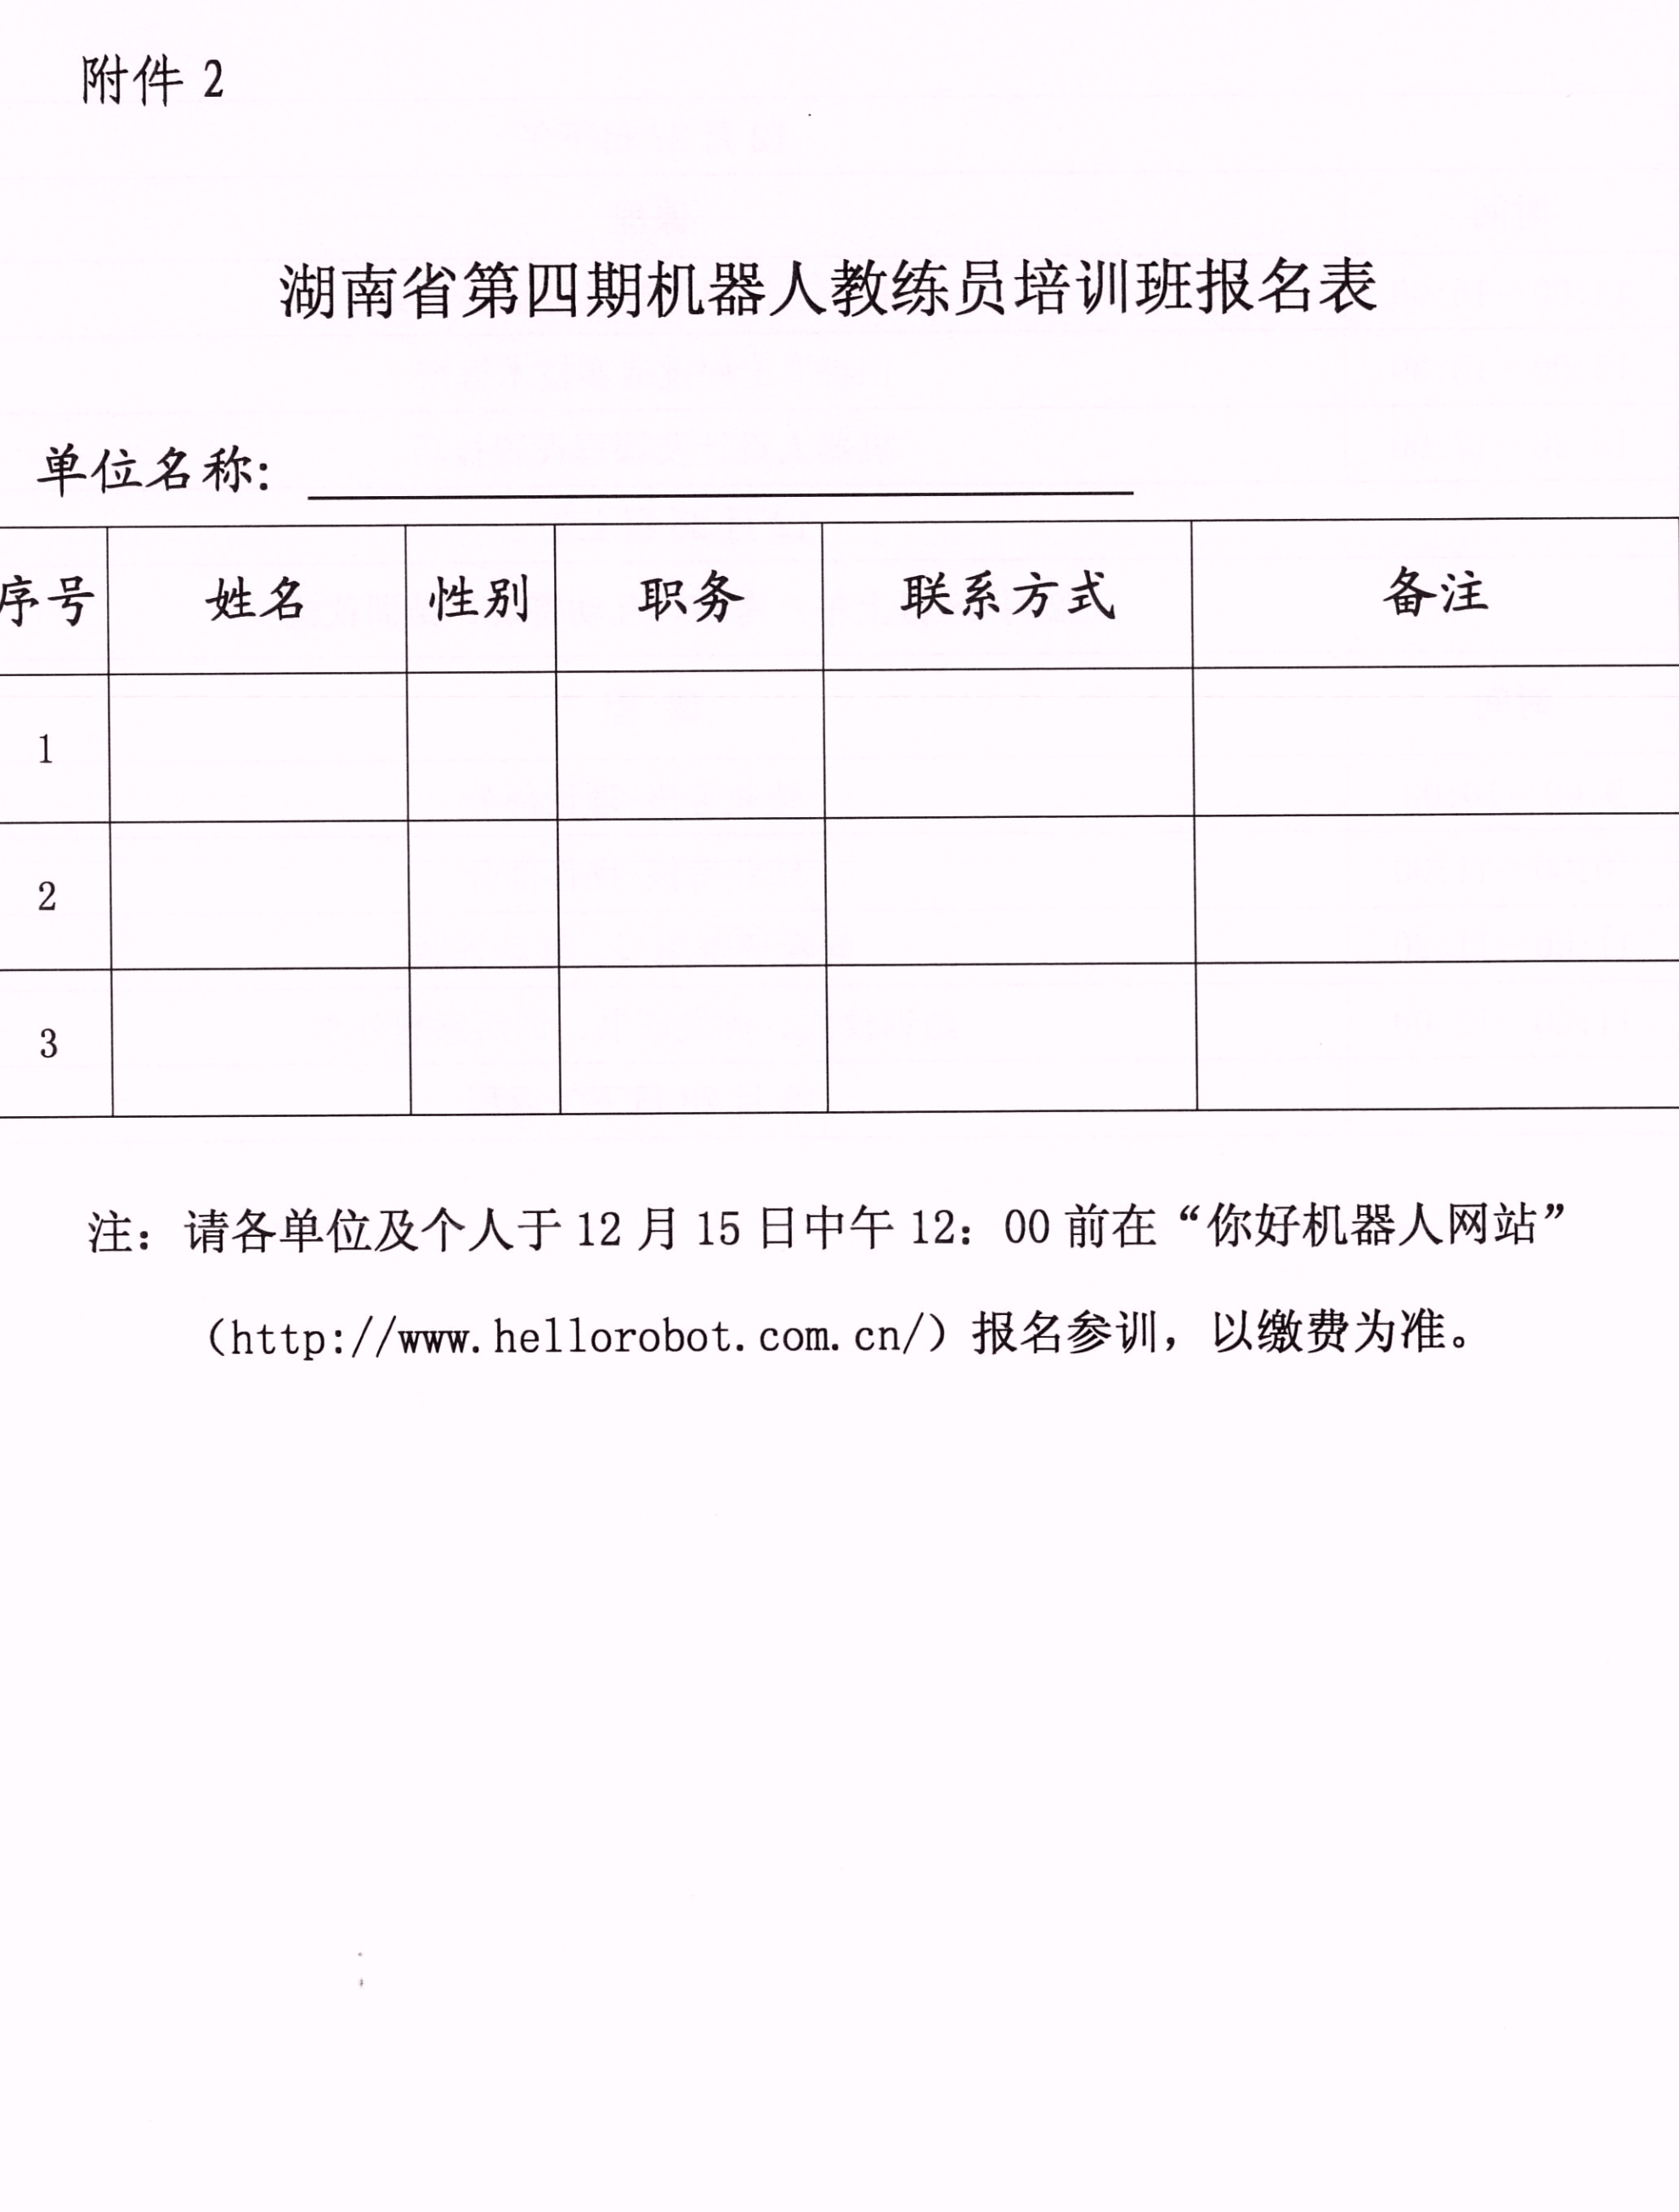 关于举办湖南省第四期机器人教练员培训班的通知_05.jpg